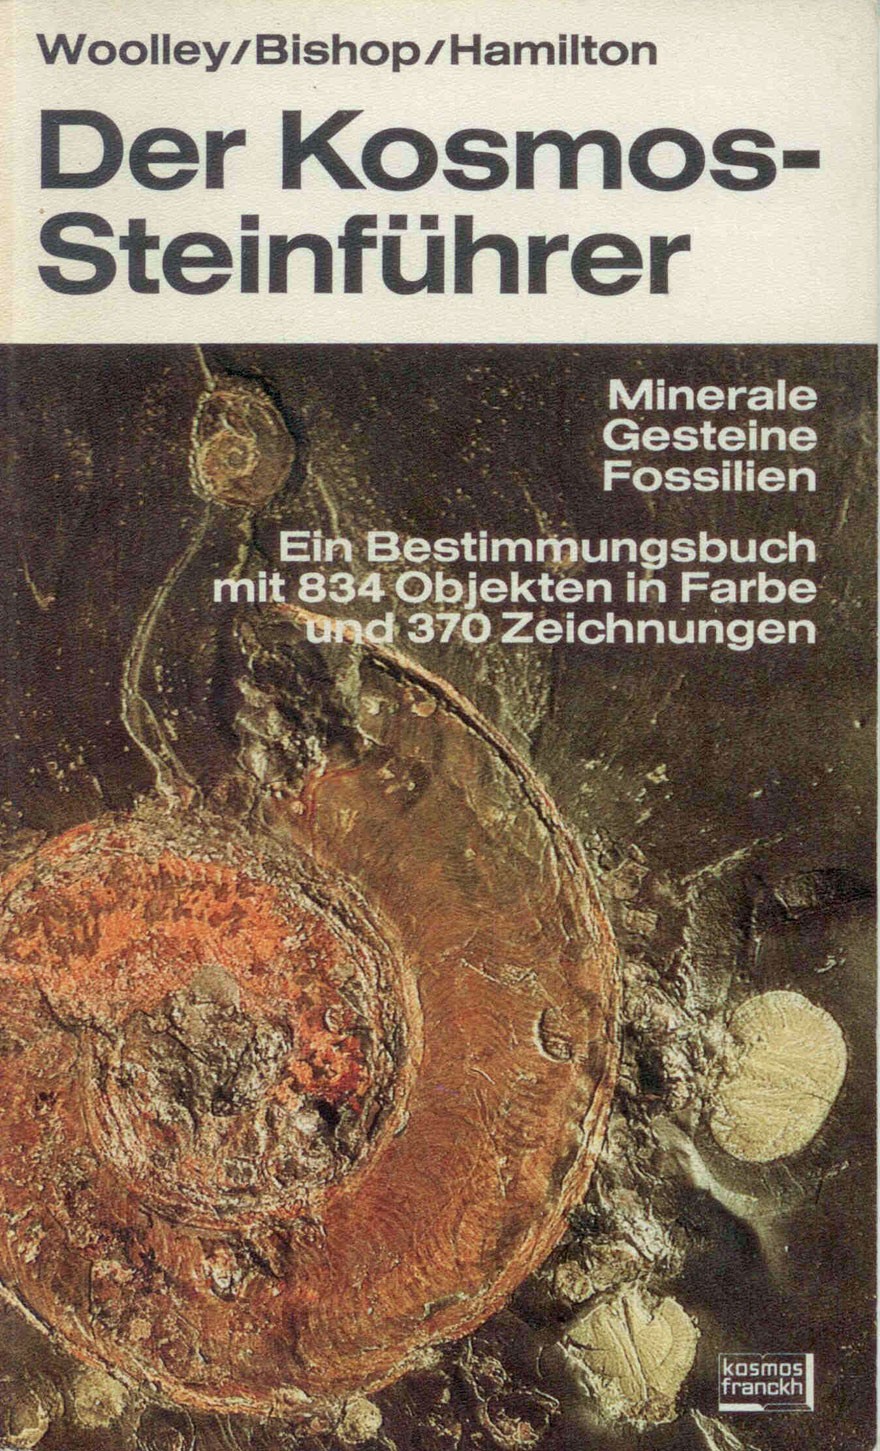 Woolley/Bishop/Hamilton: Der Kosmos-Steinführer - Minerale, Gesteine, Fossilien